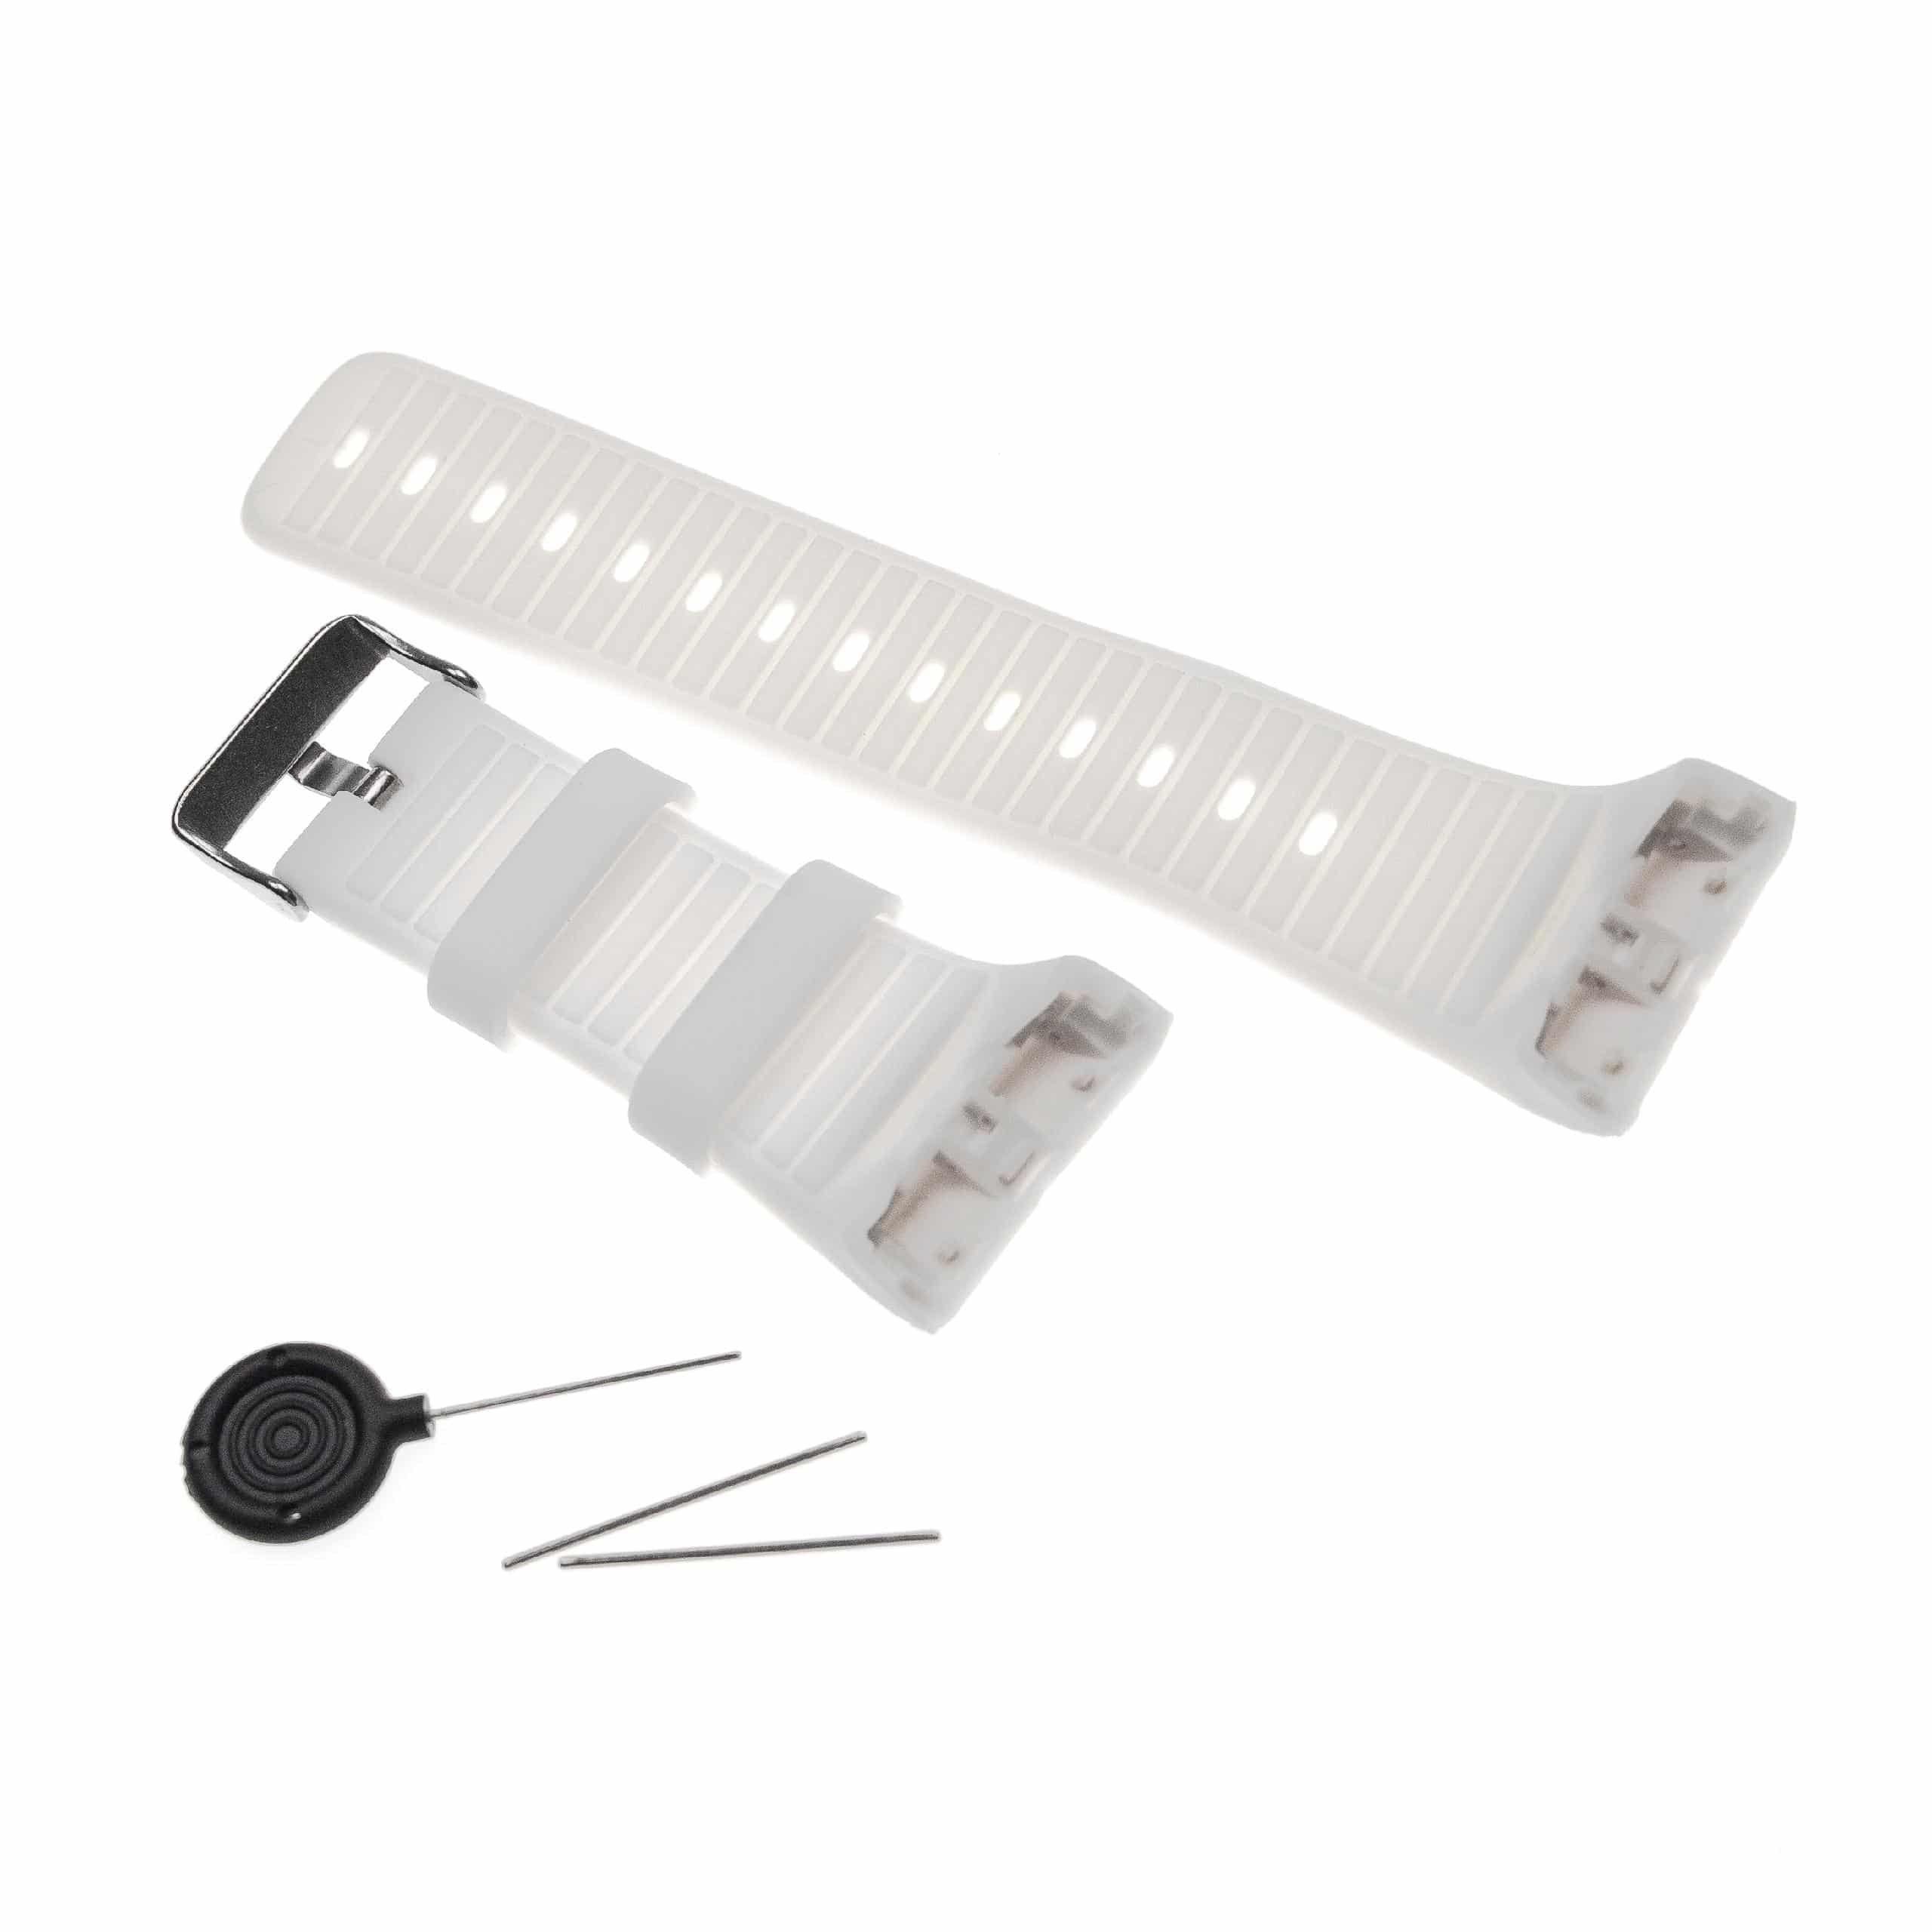 cinturino per Polar Smartwatch - 14,5 + 8,9 cm lunghezza, 34mm ampiezza, silicone, bianco